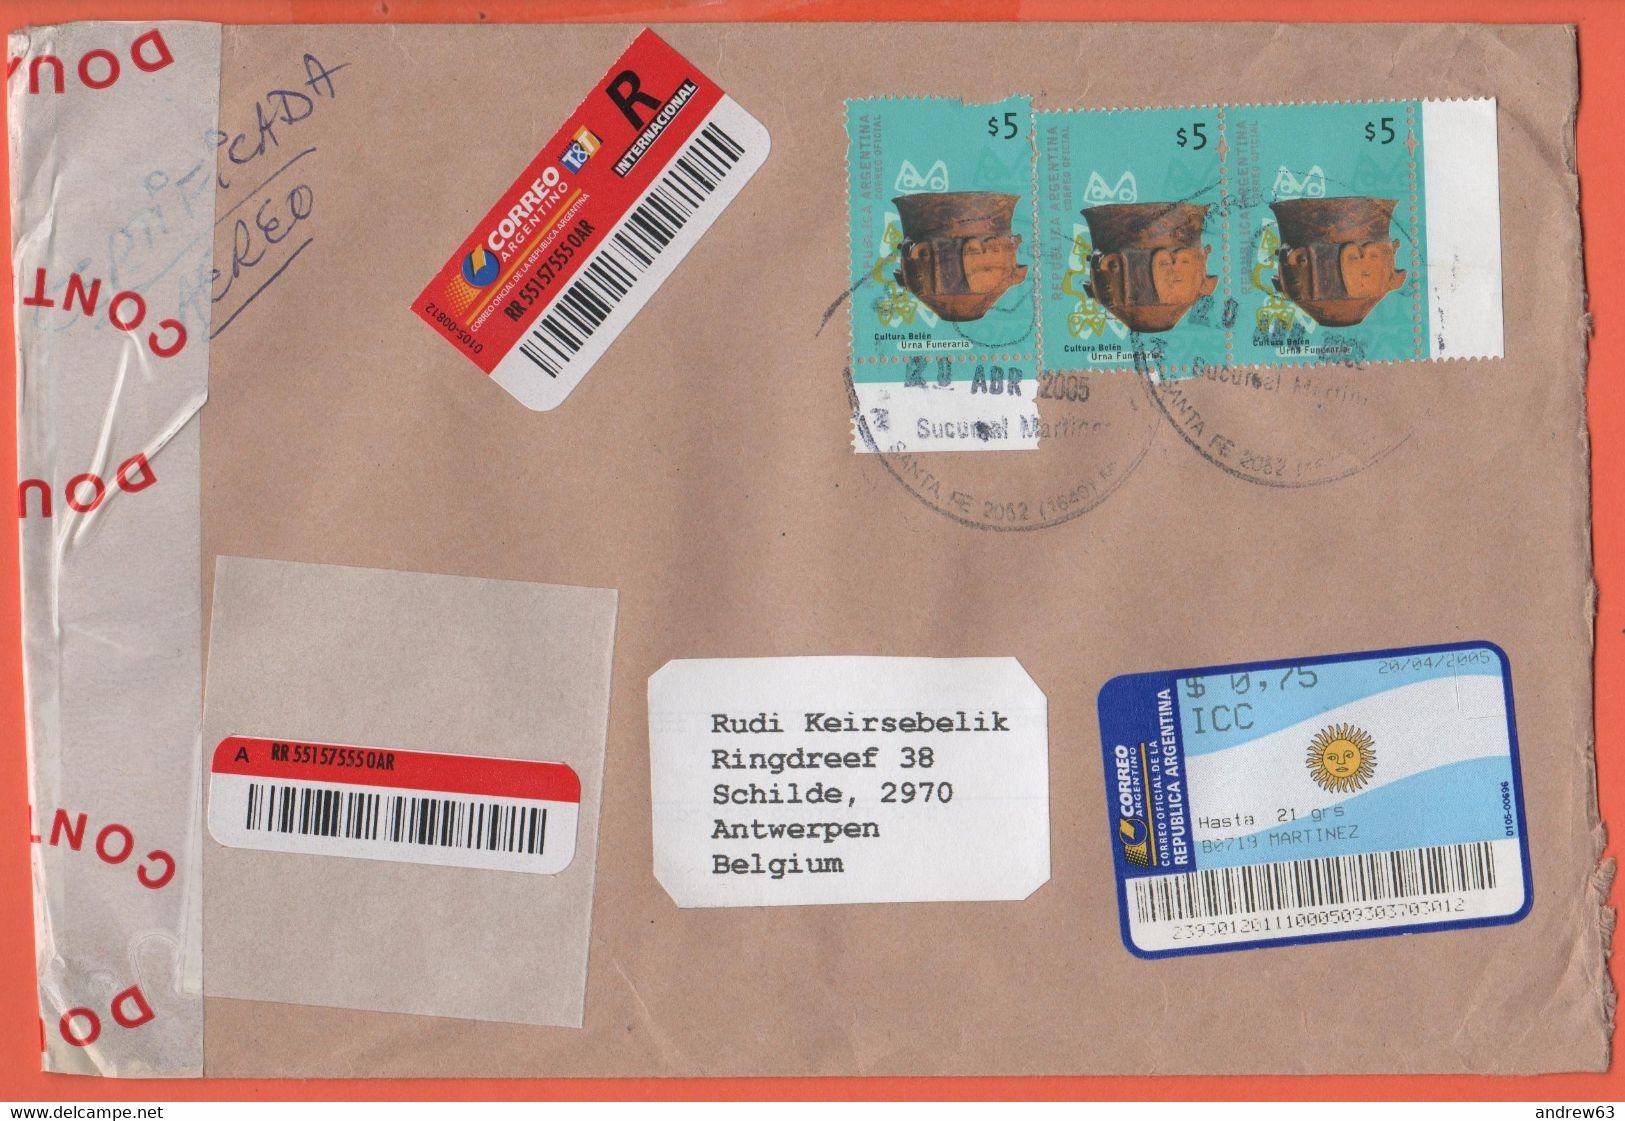 ARGENTINA - 2005 - 3 Stamps + 0,75 Postage Paid - Registered - Medium Envelope - Viaggiata Da Martinez Per Schilde, Belg - Covers & Documents